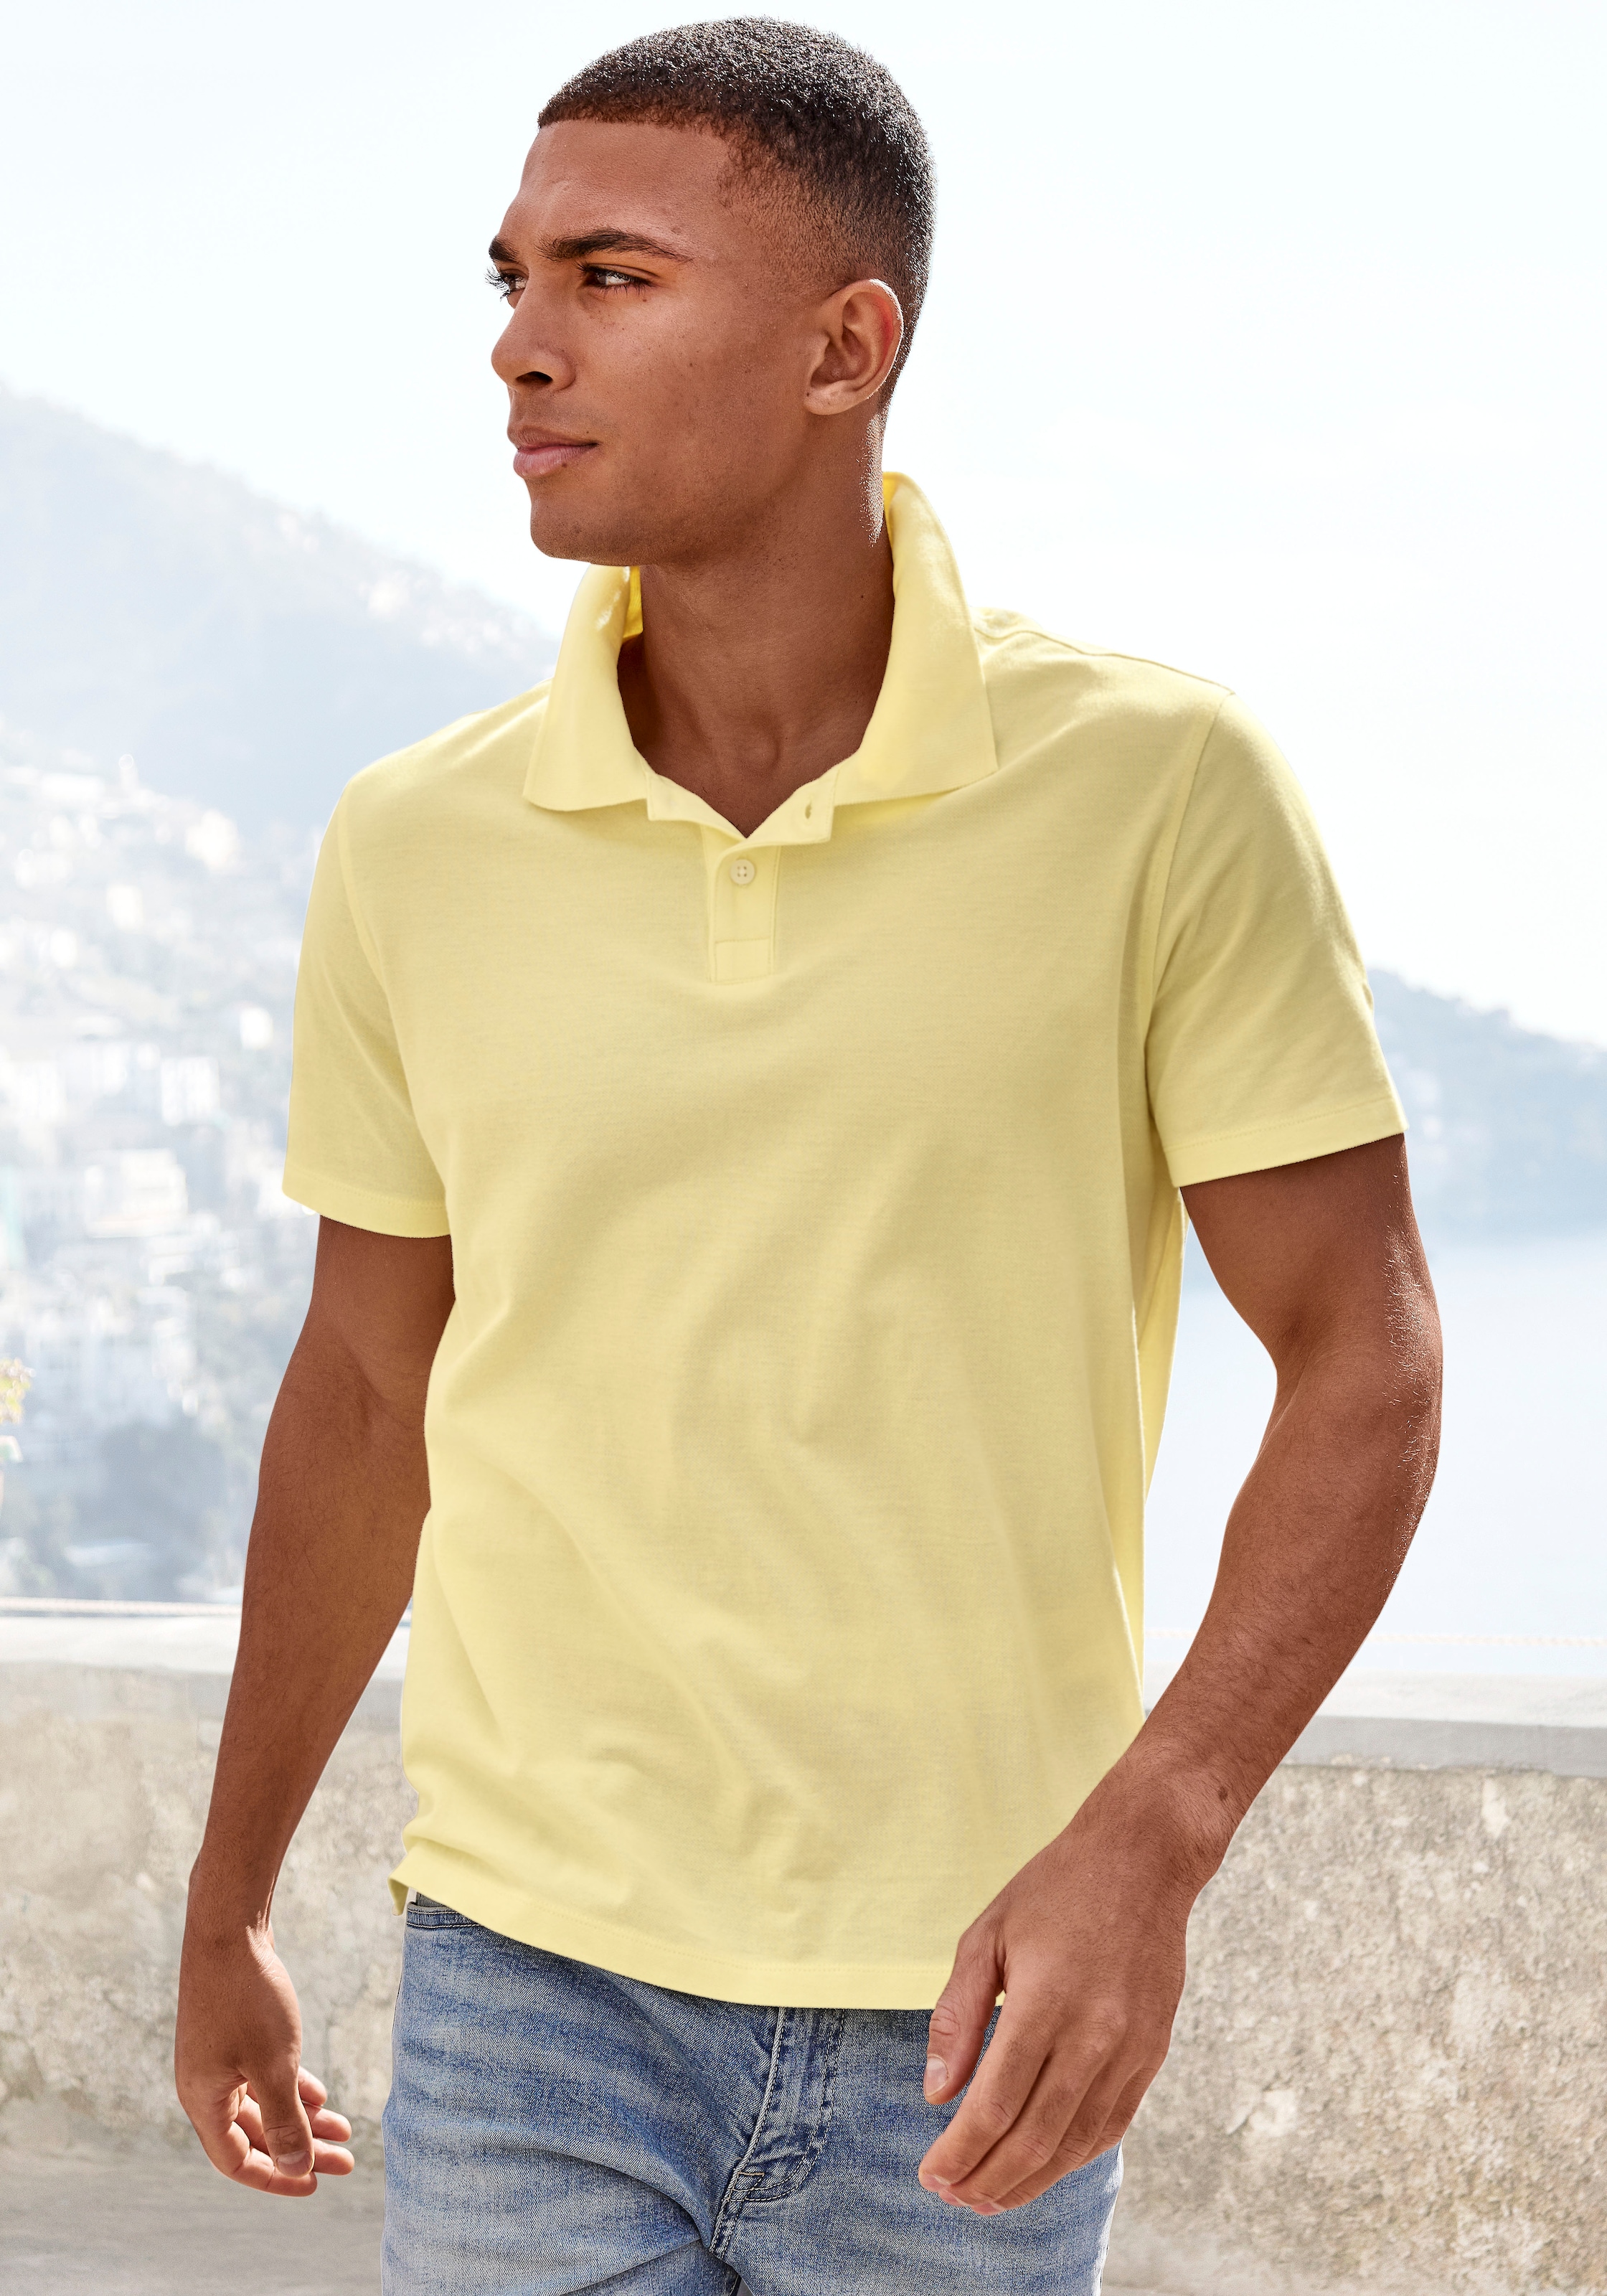 Beachtime Poloshirt, Kurzarm, Shirt mit Polokragen, Baumwoll-Piquè